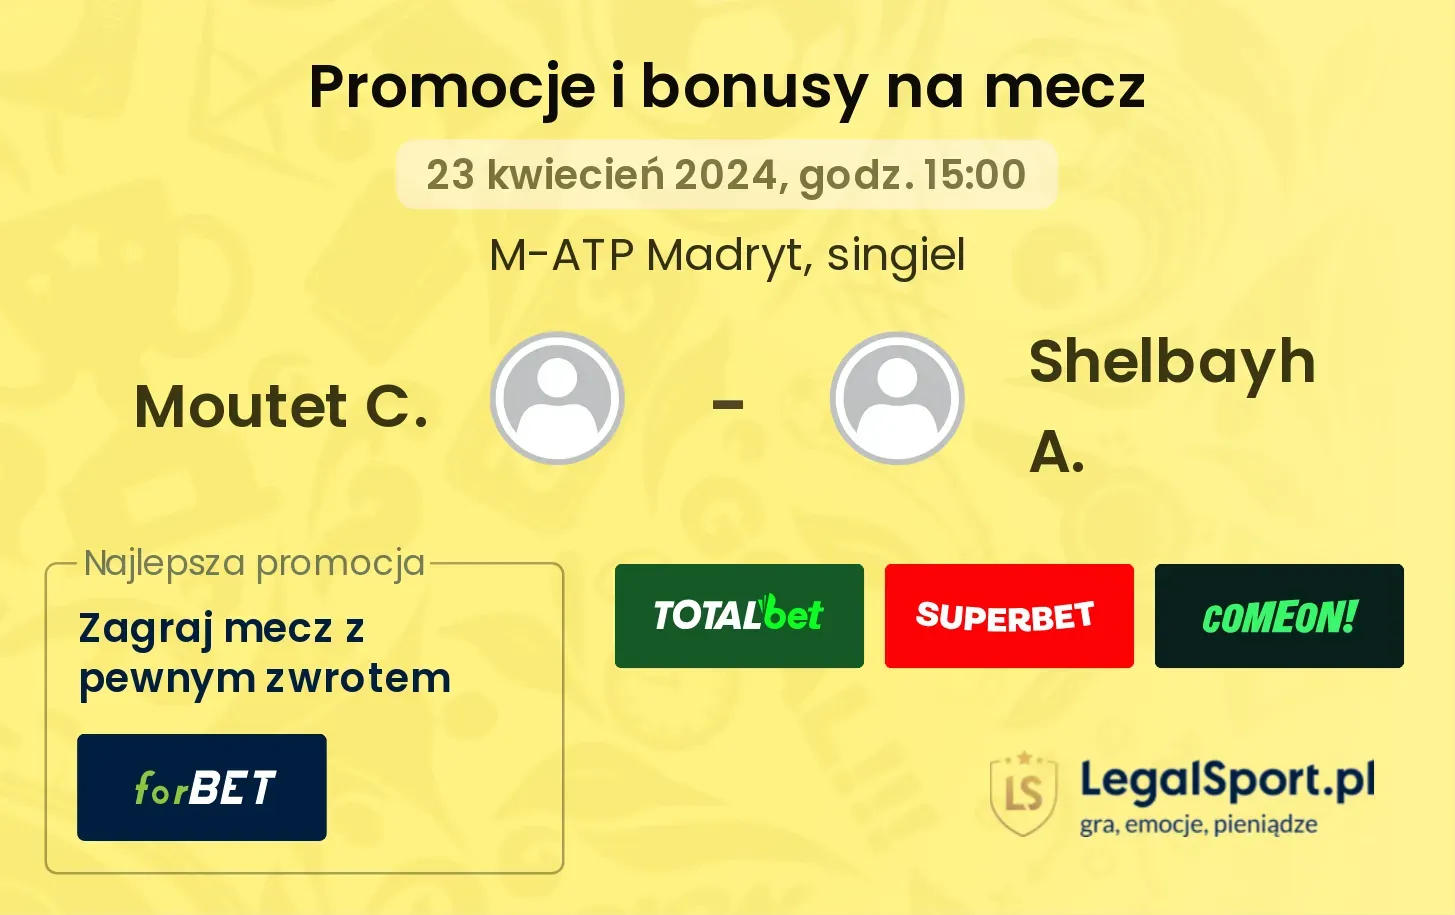 Moutet C. - Shelbayh A. promocje bonusy na mecz